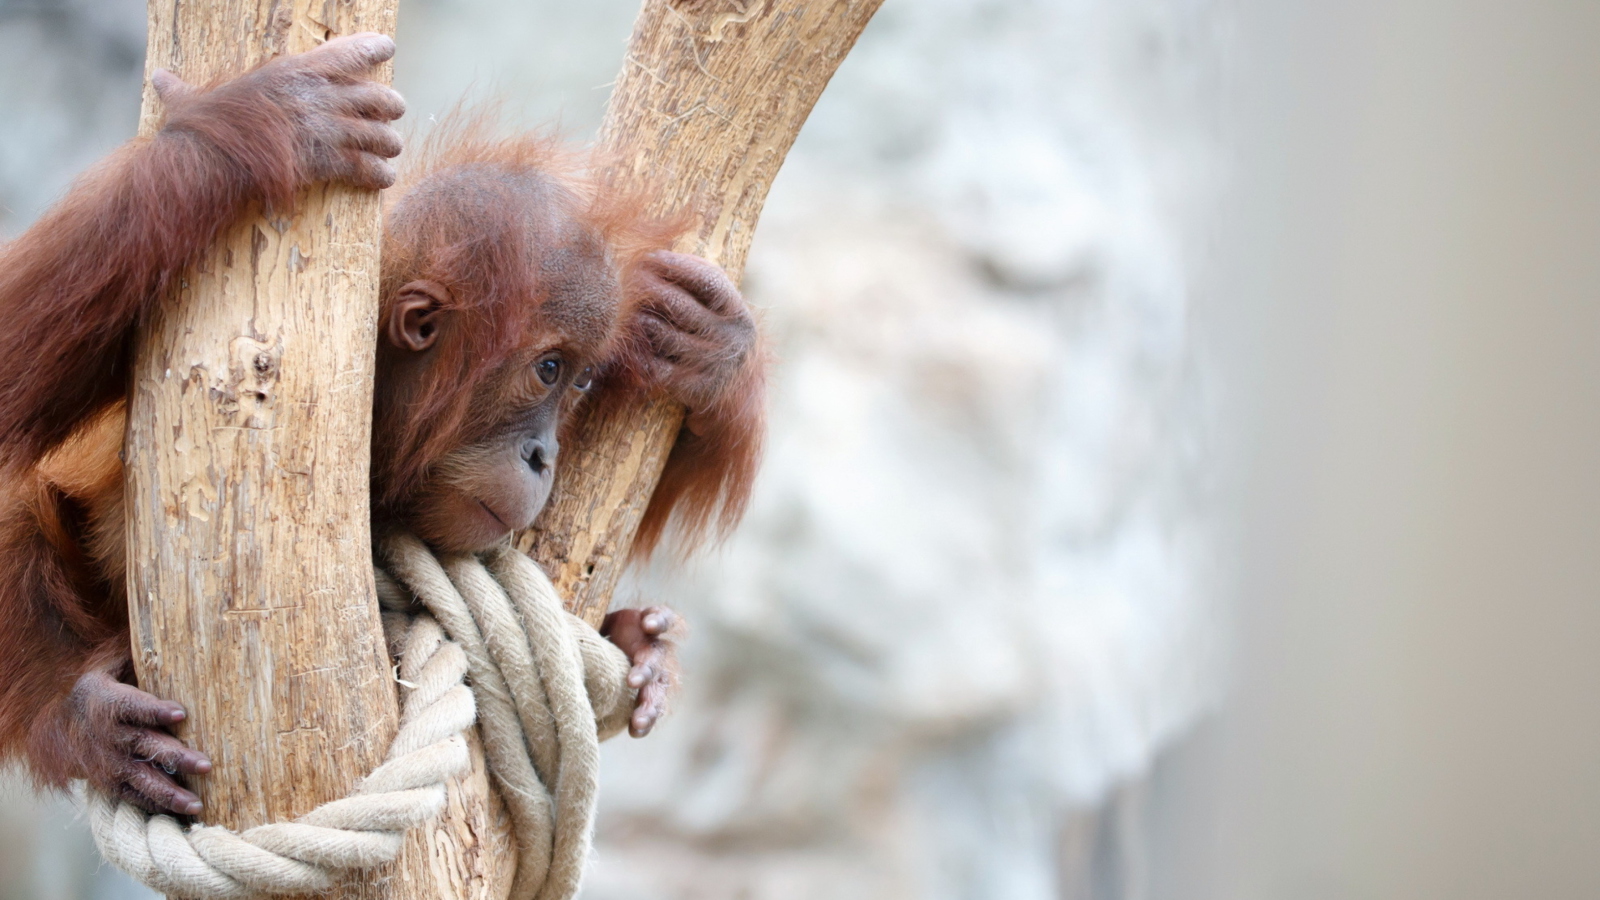 Cute Little Monkey In Zoo screenshot #1 1600x900